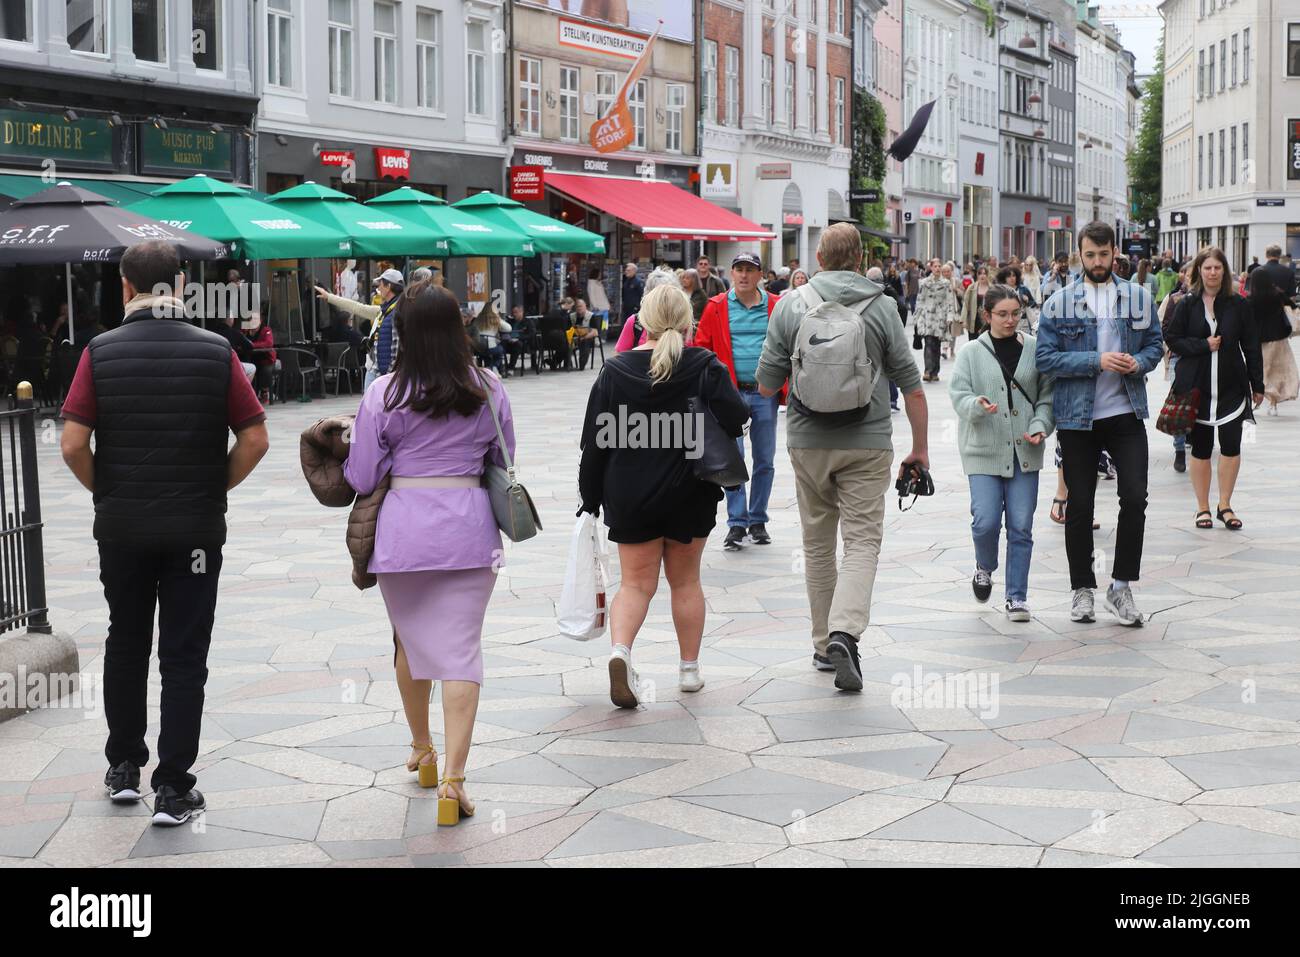 Copenhague, Dinamarca - 14 de junio de 2022: La gente se acercaba a la plaza Amagaertorv en la calle comercial Stroget. Foto de stock